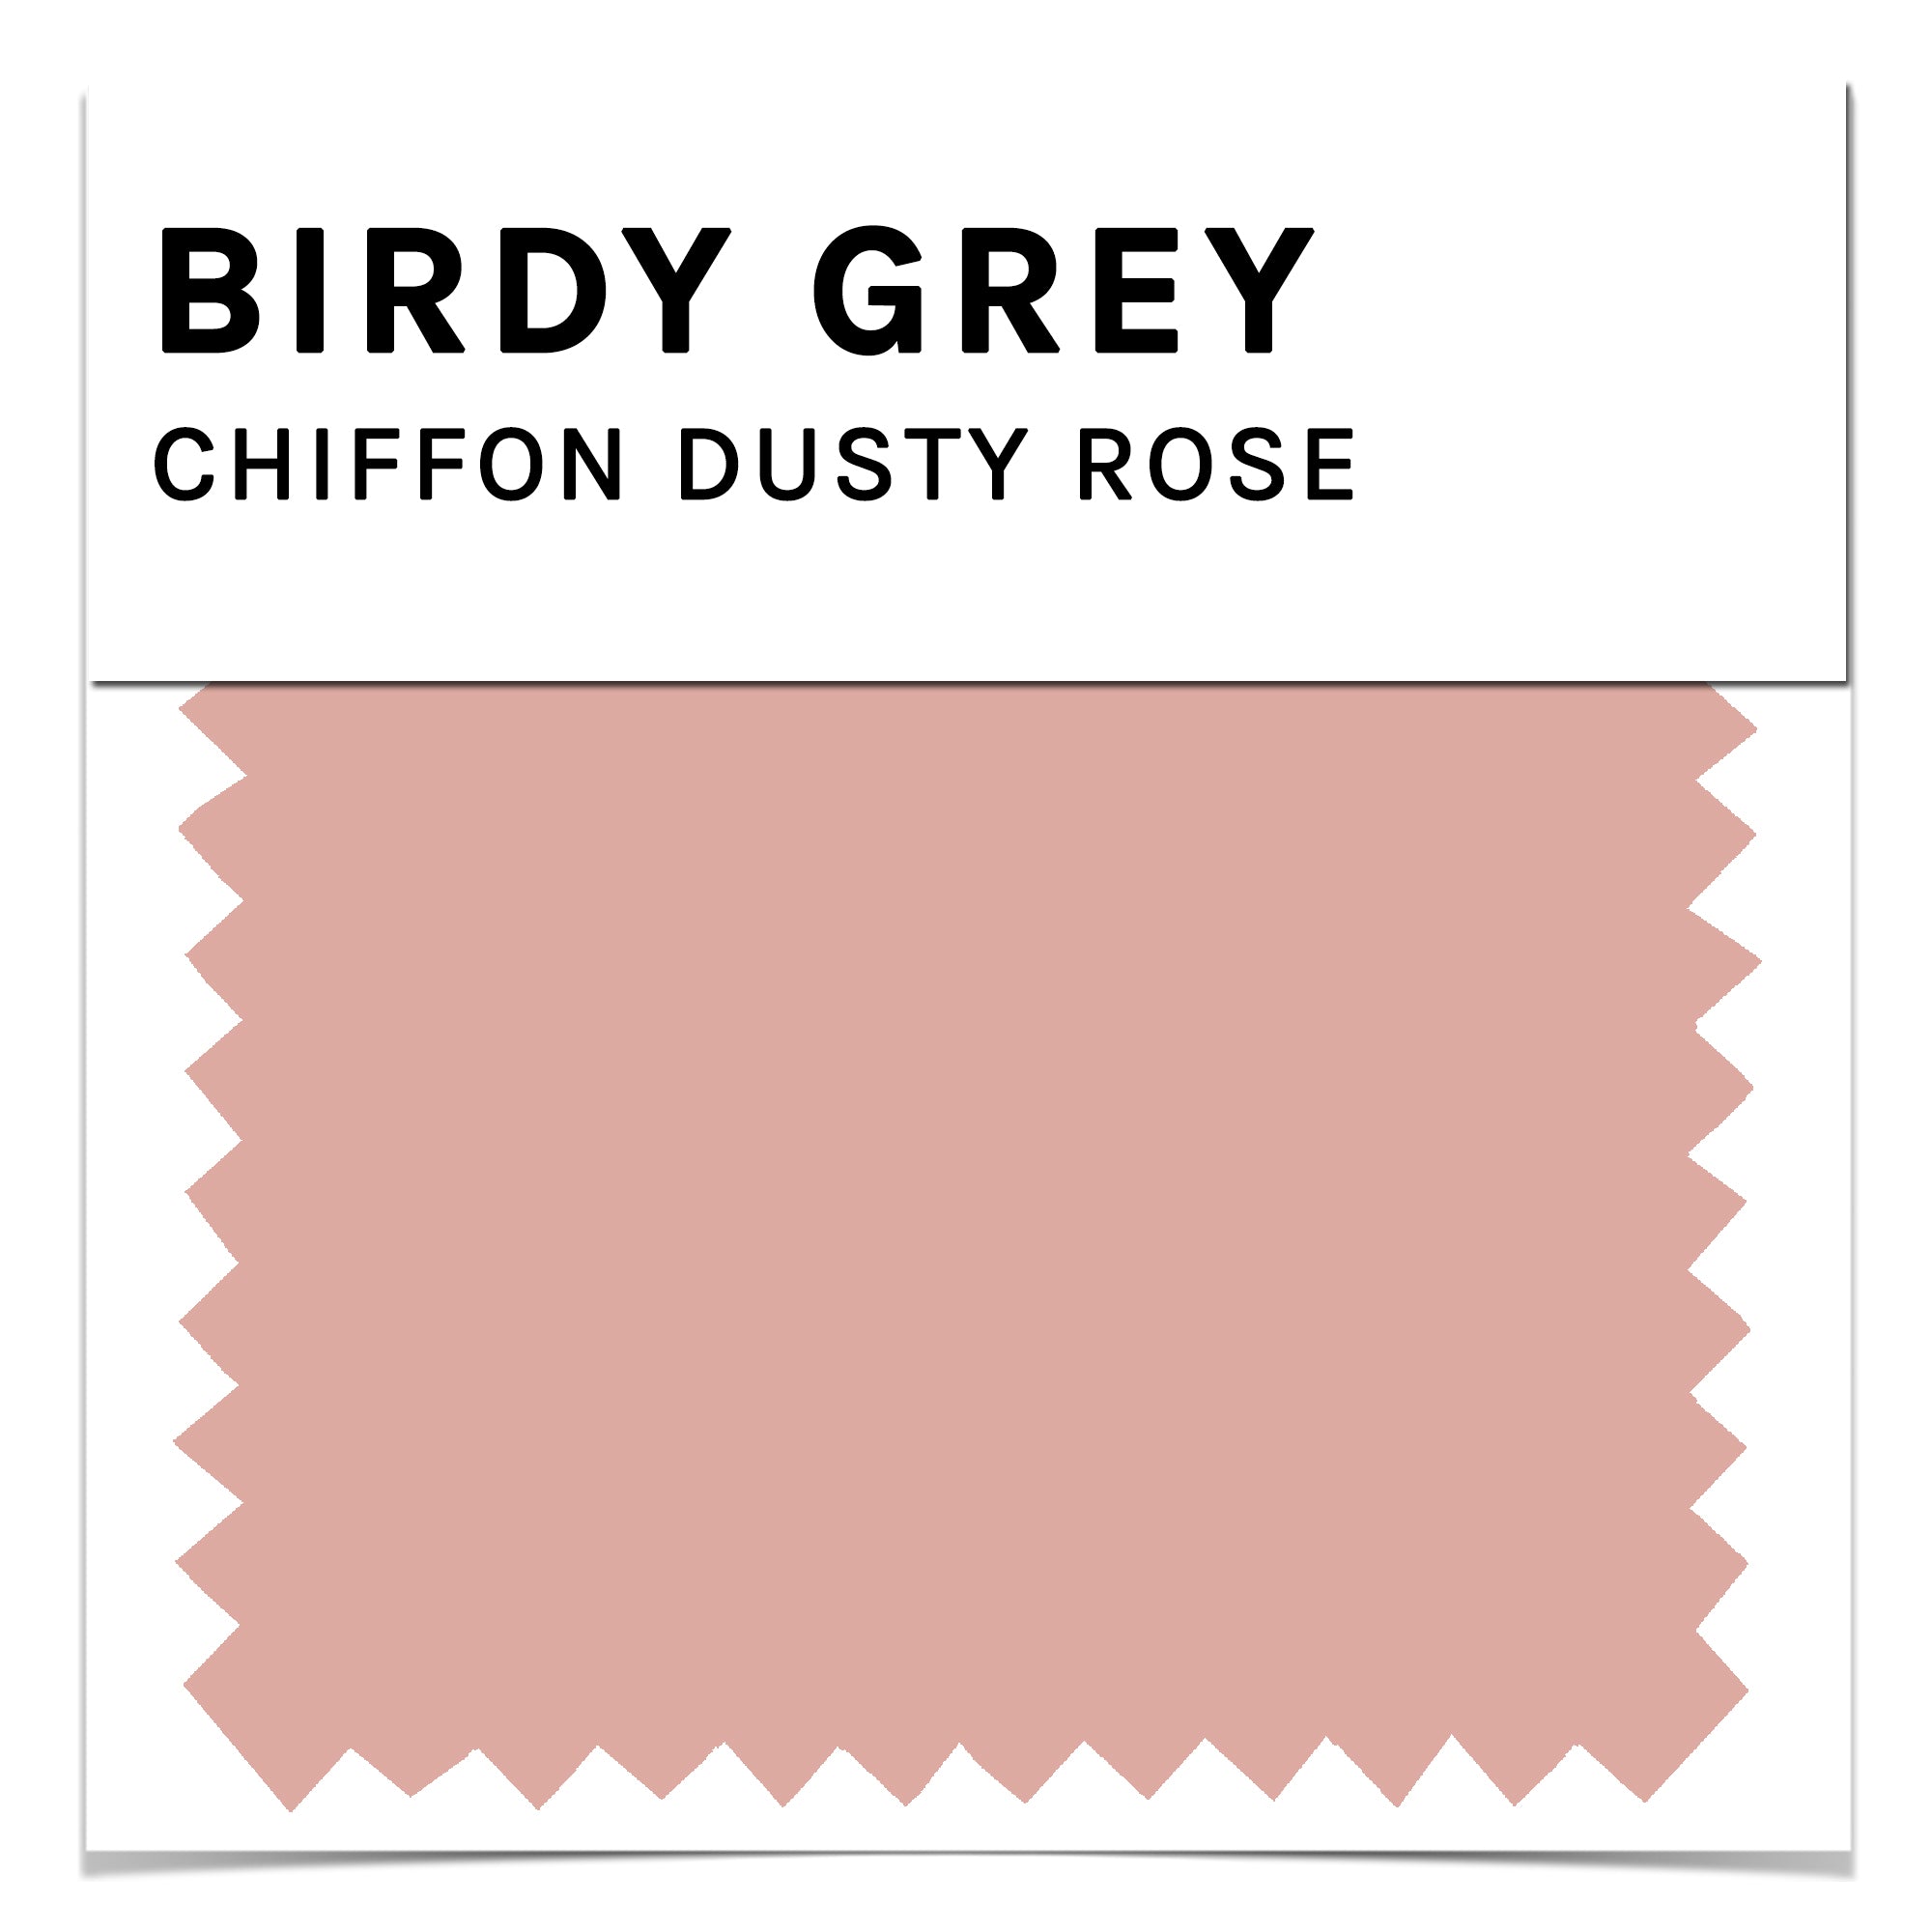 Chiffon Dusty Rose